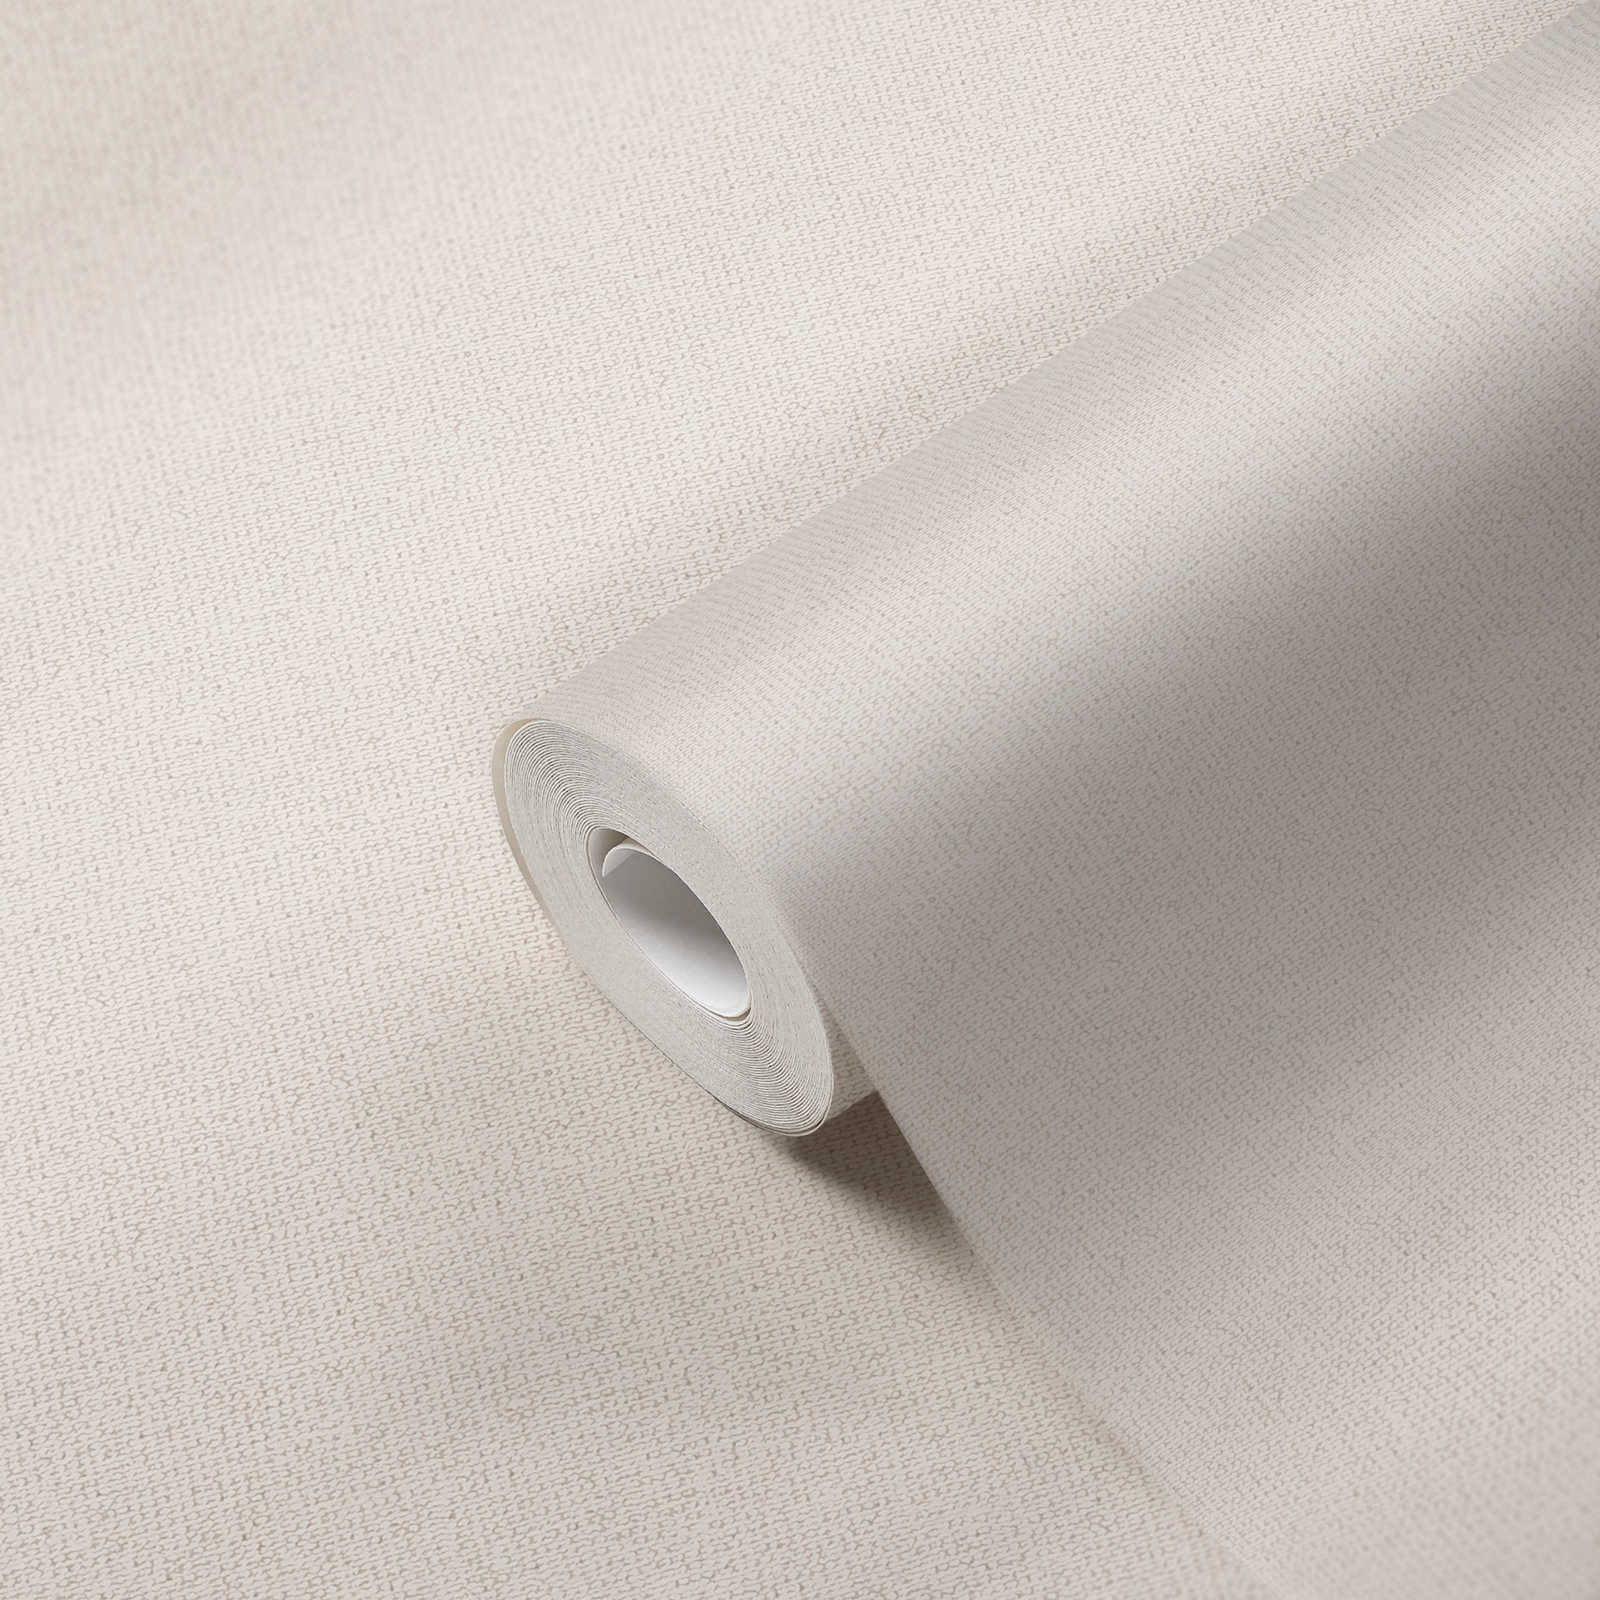             Mat vliesbehang met linnenstructuur - wit, crème
        